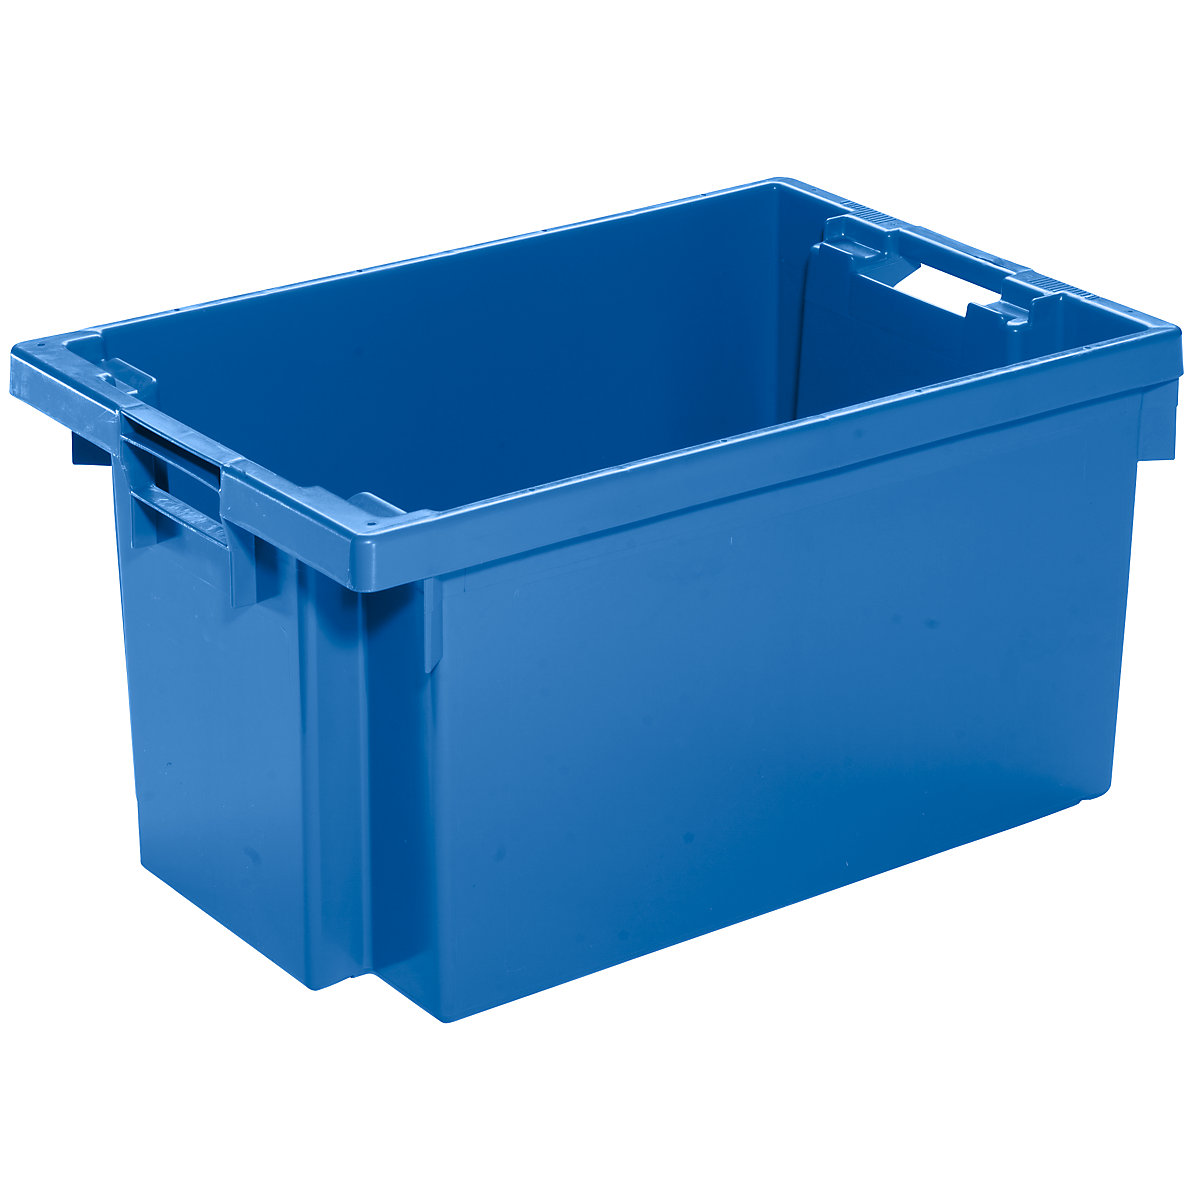 Drehstapelbehälter aus HDPE, Inhalt 50 l, Wände und Boden geschlossen, blau